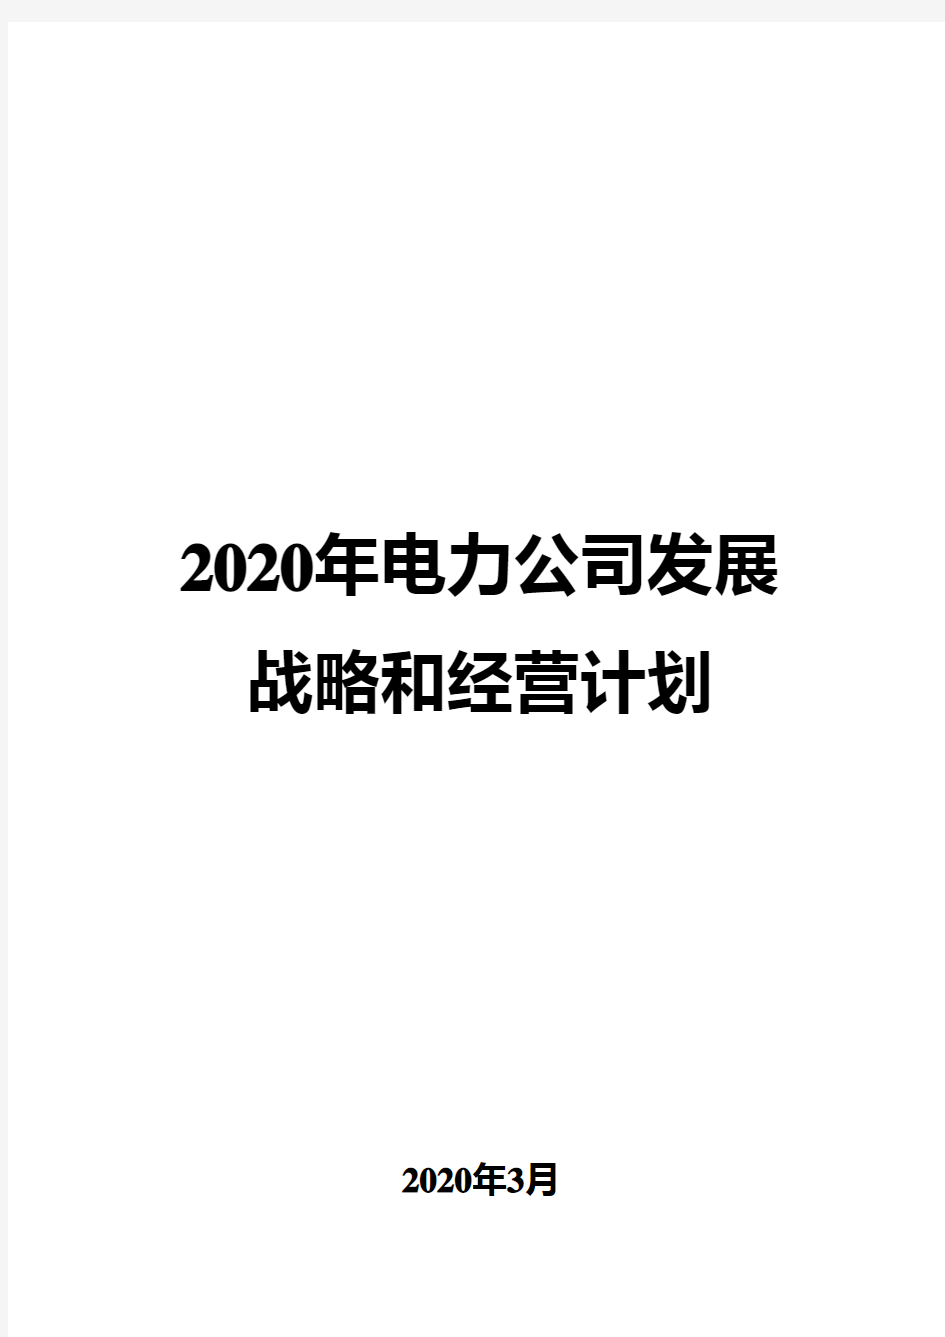 2020年电力公司发展战略和经营计划